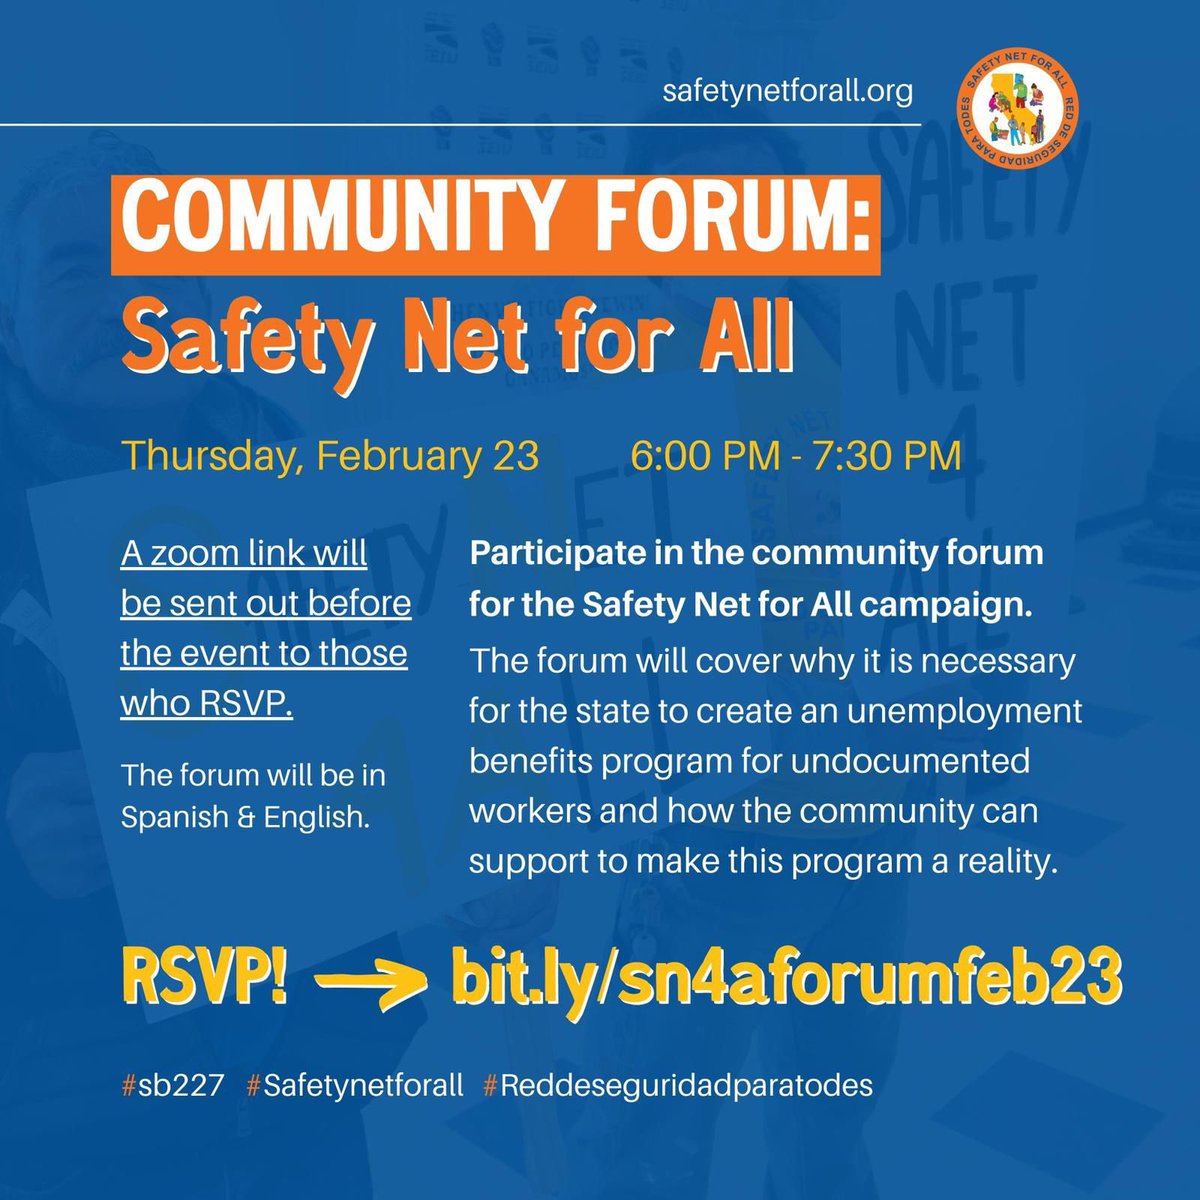 Join the #SafetyNetforAll virtual community forum on Thursday Feb 23rd! Acompáñenos al foro de #SafetyNetForAll , este 23 de Febrero. #SB227  bit.ly/sn4aforumfeb23